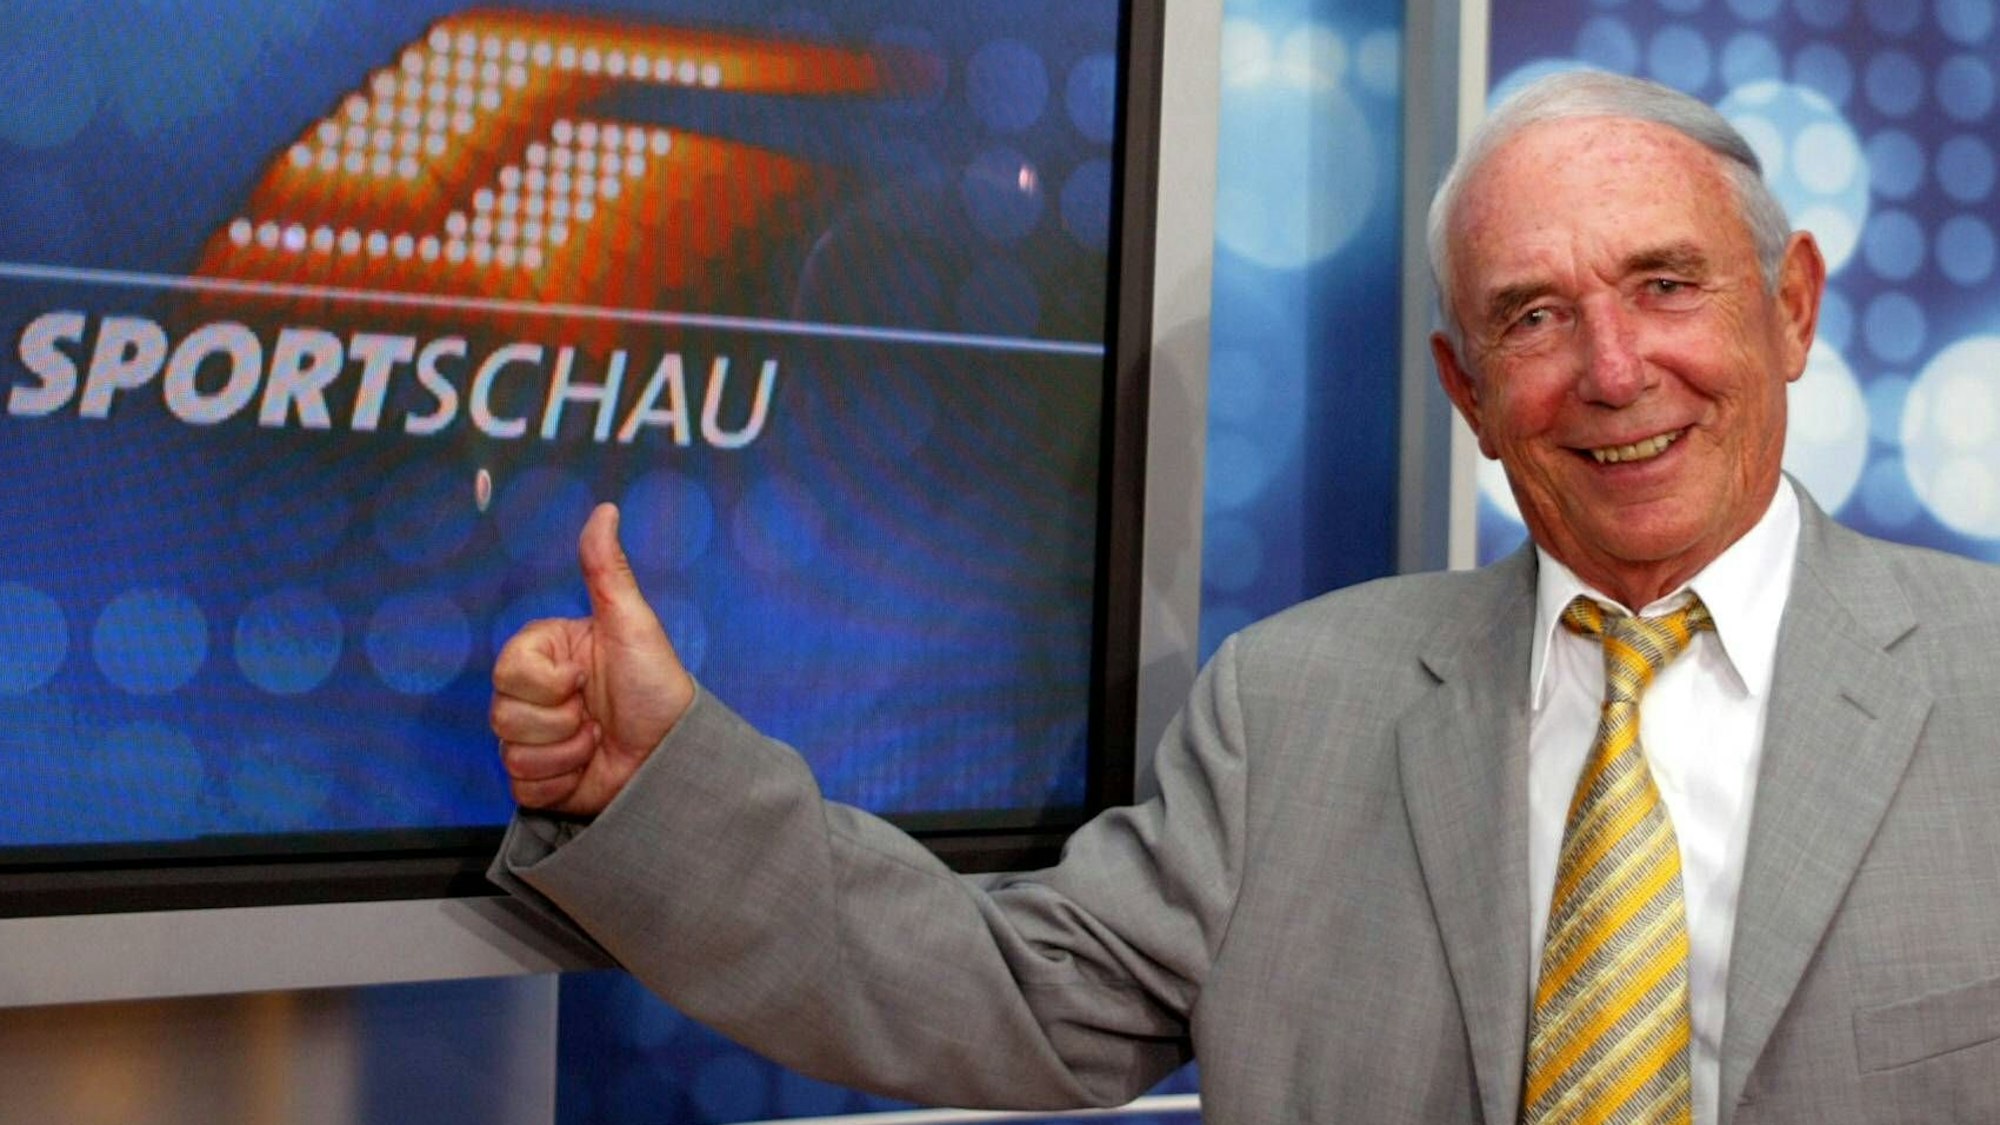 Das Bild zeigt Ex-Sportschau Moderator Ernst Huberty, vor dem Logo der Sportschau.